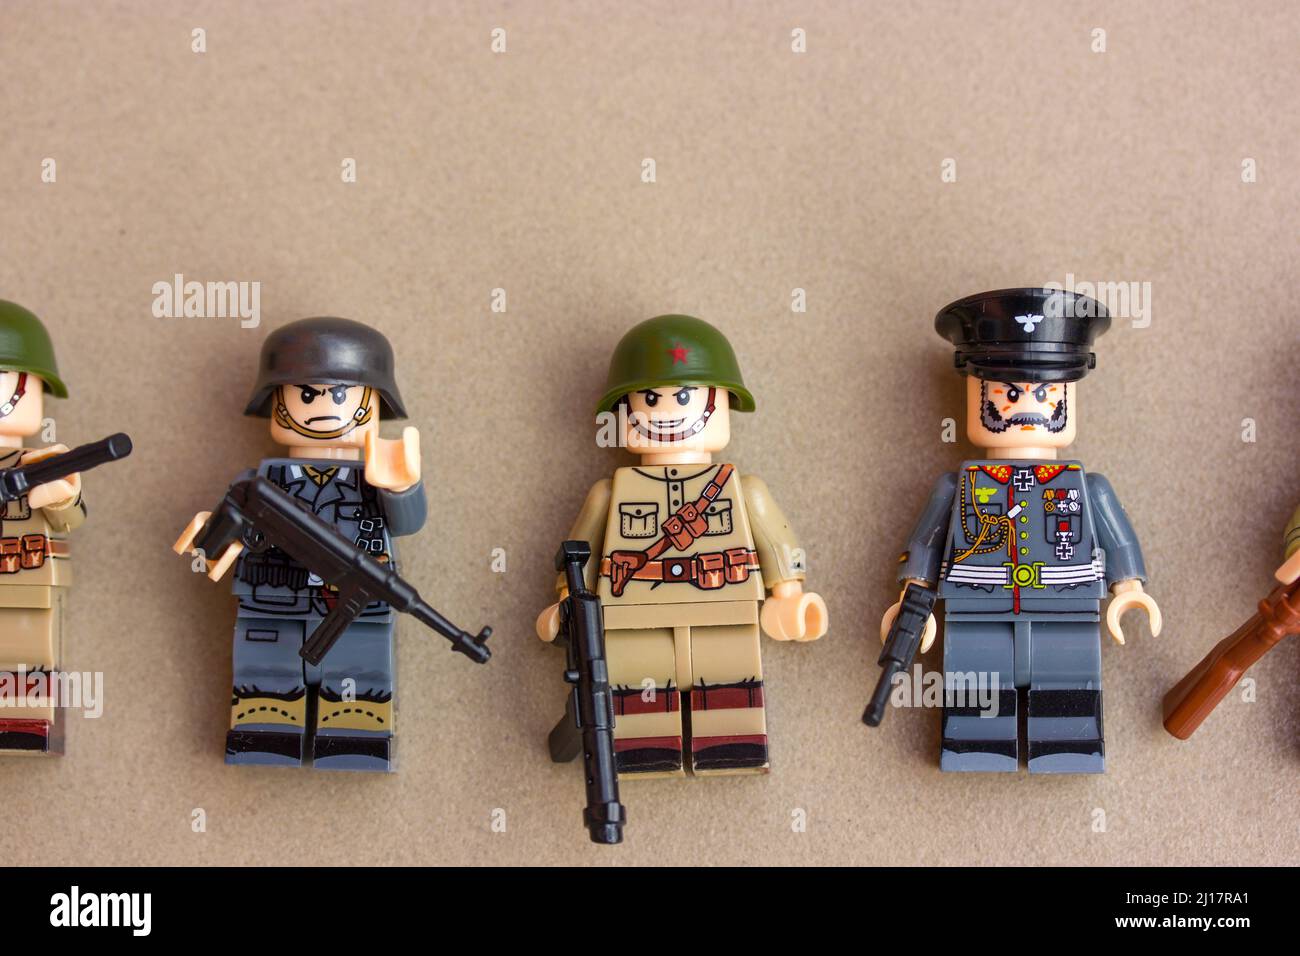 Figurines type lego 8 militaires Français de la deuxième guerre